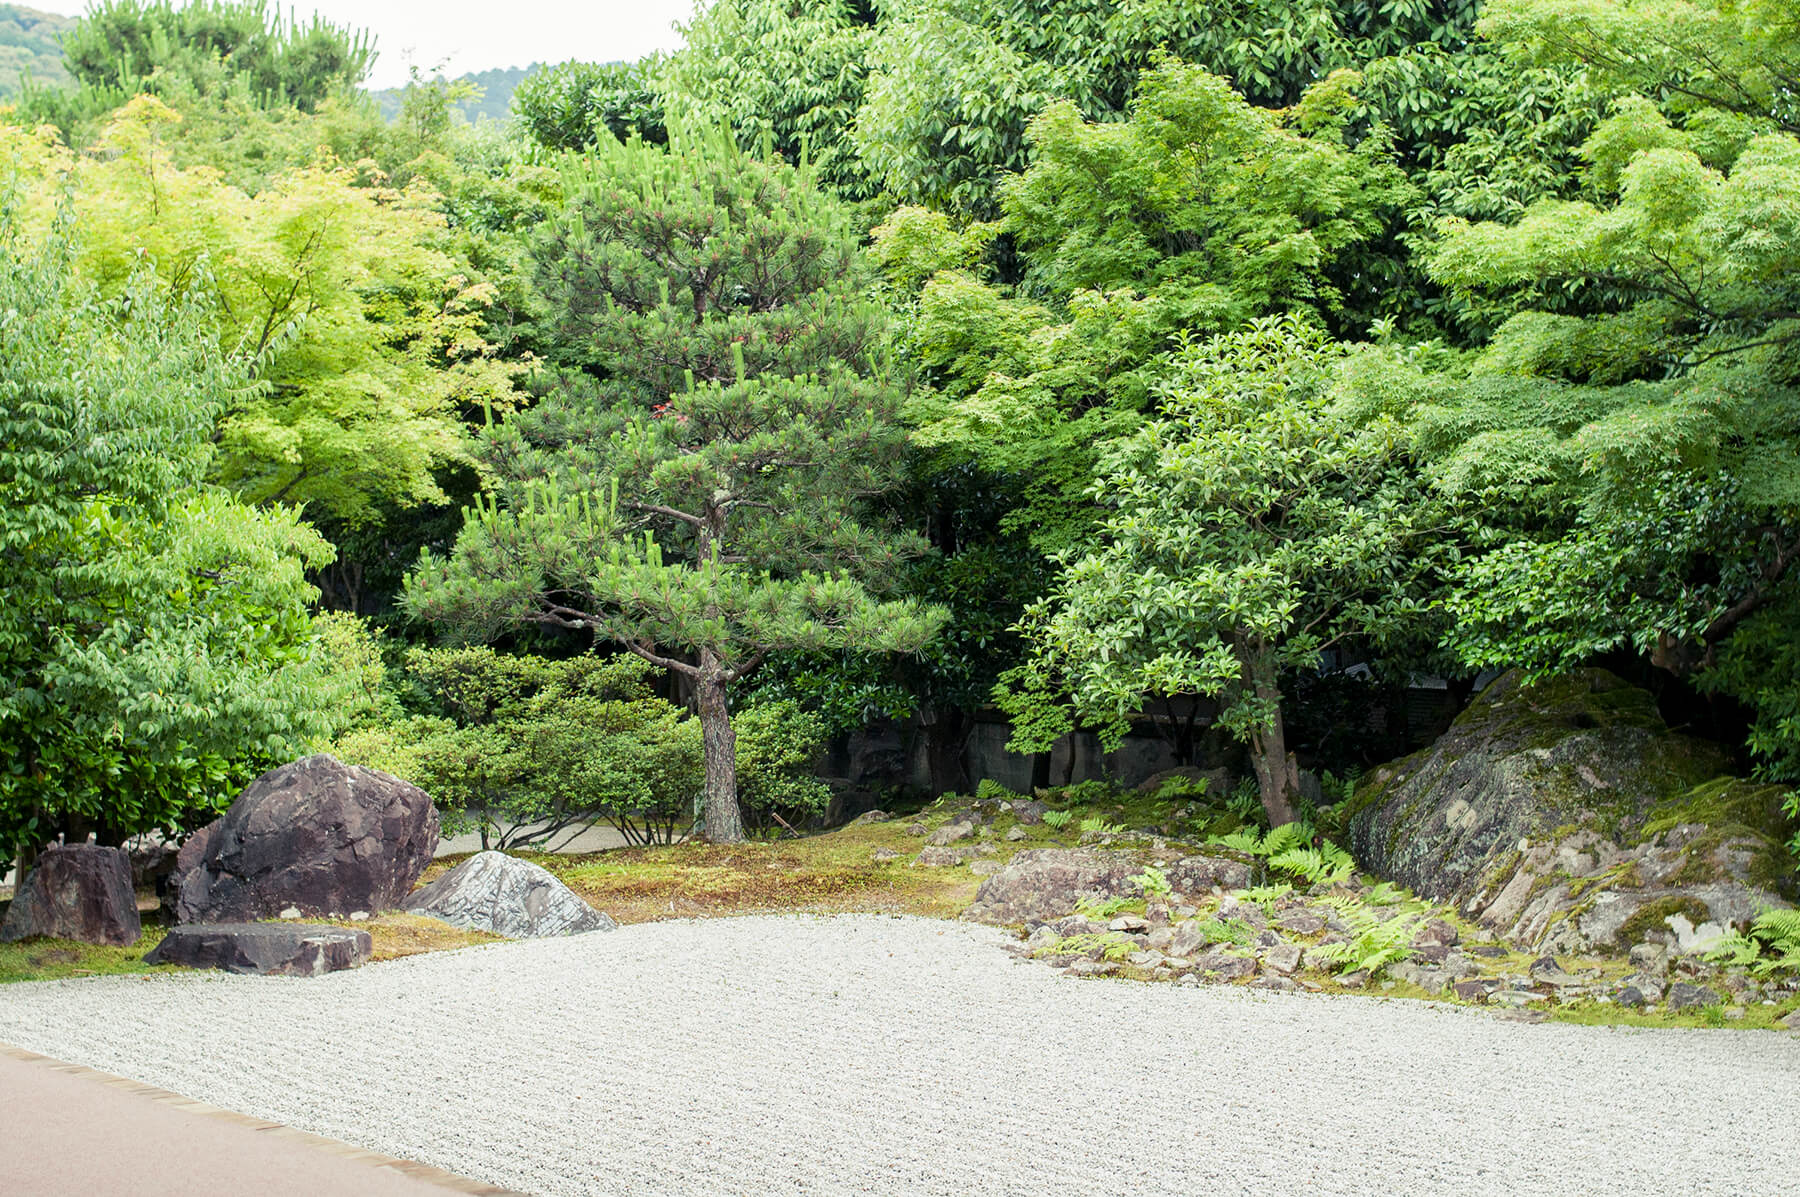 
          京都「高台寺圓徳院」の庭園写真2
      